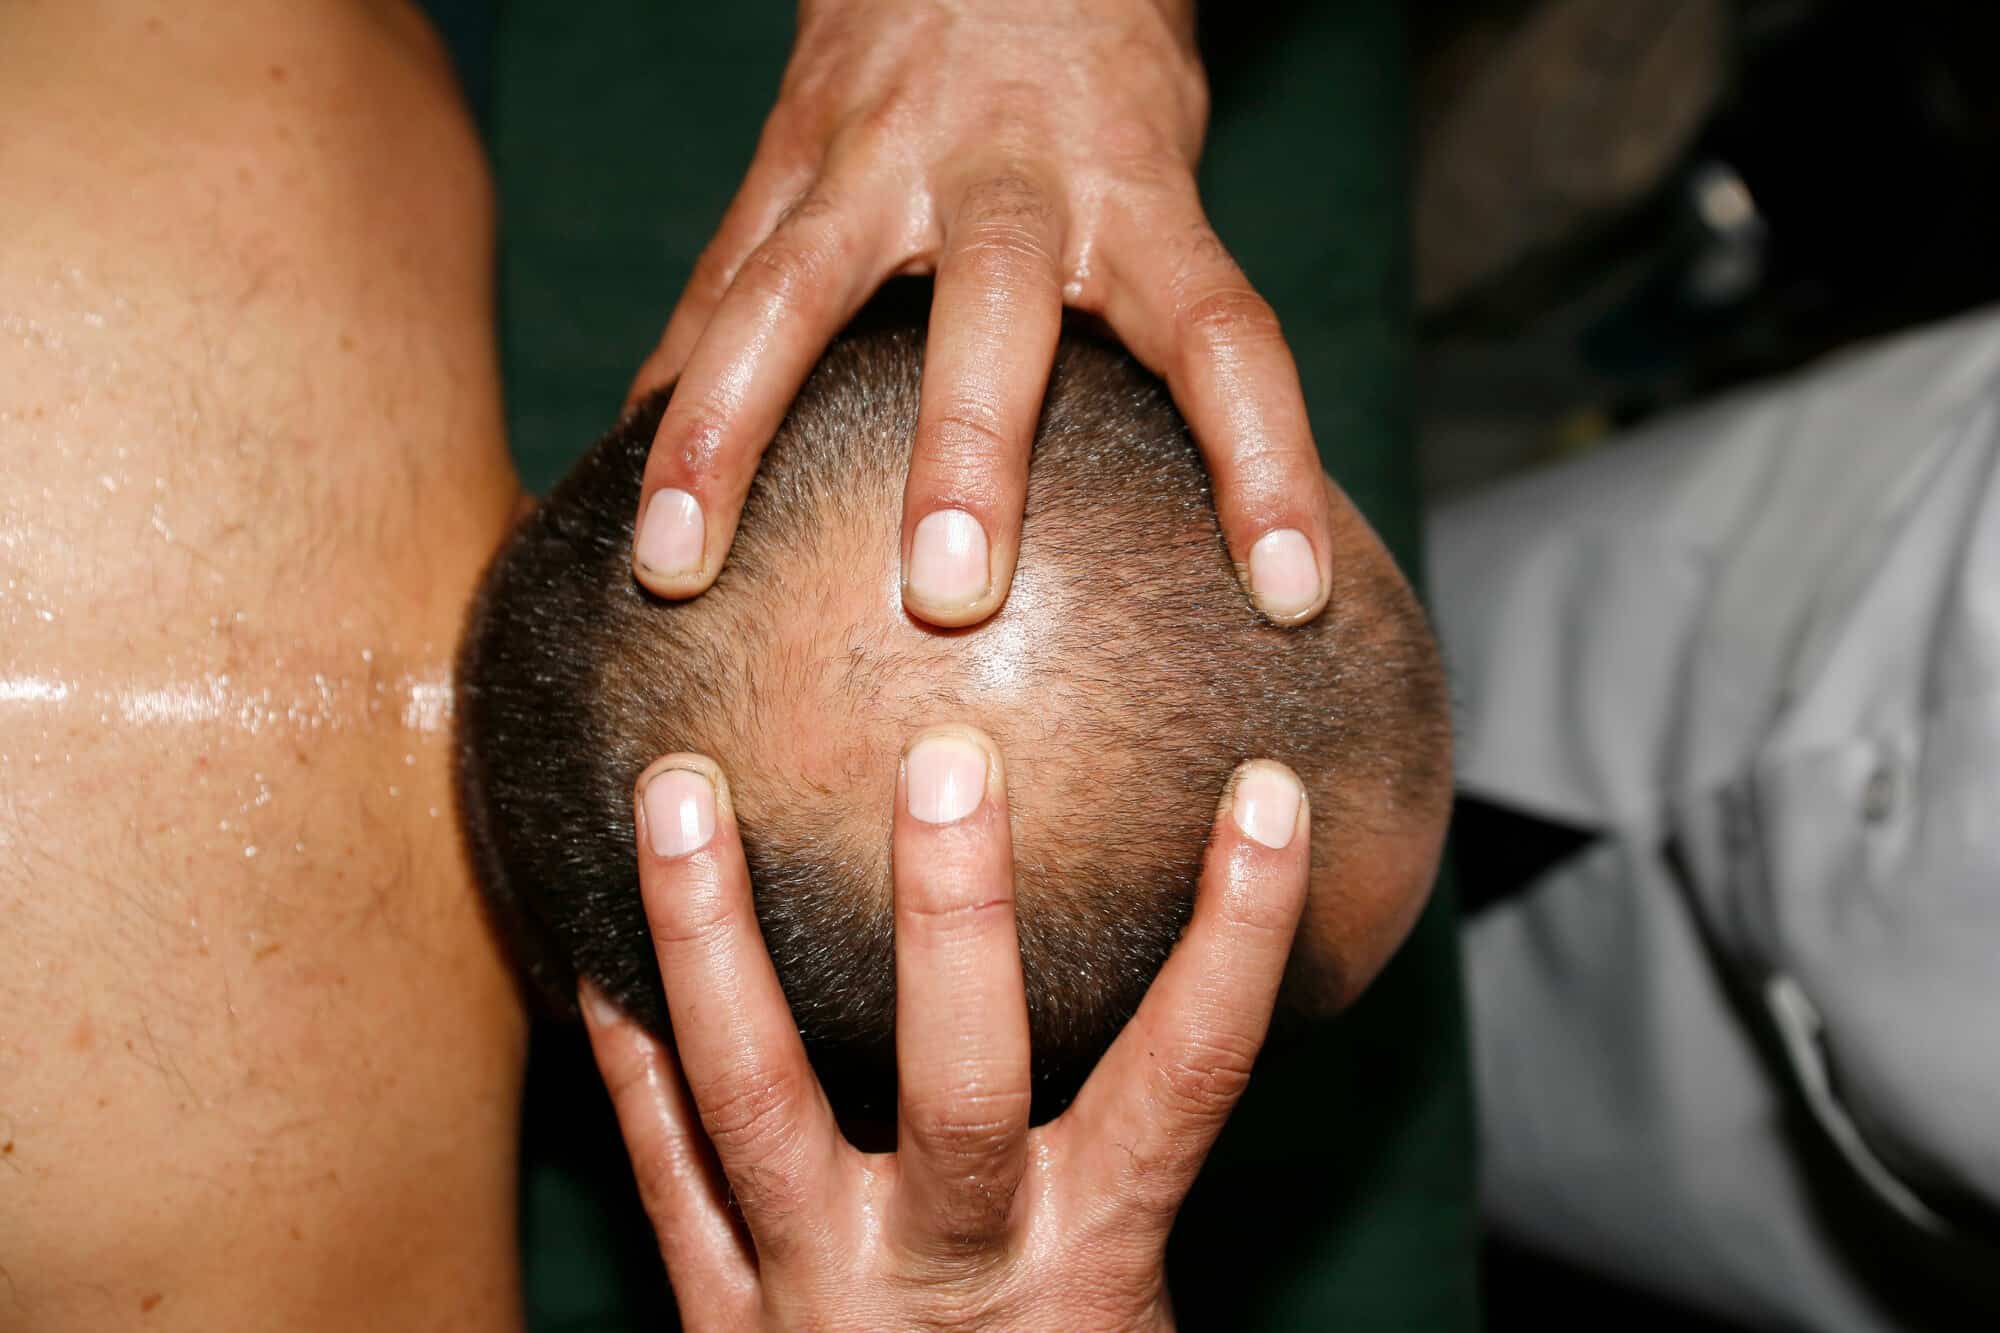 man getting an Indian head massage